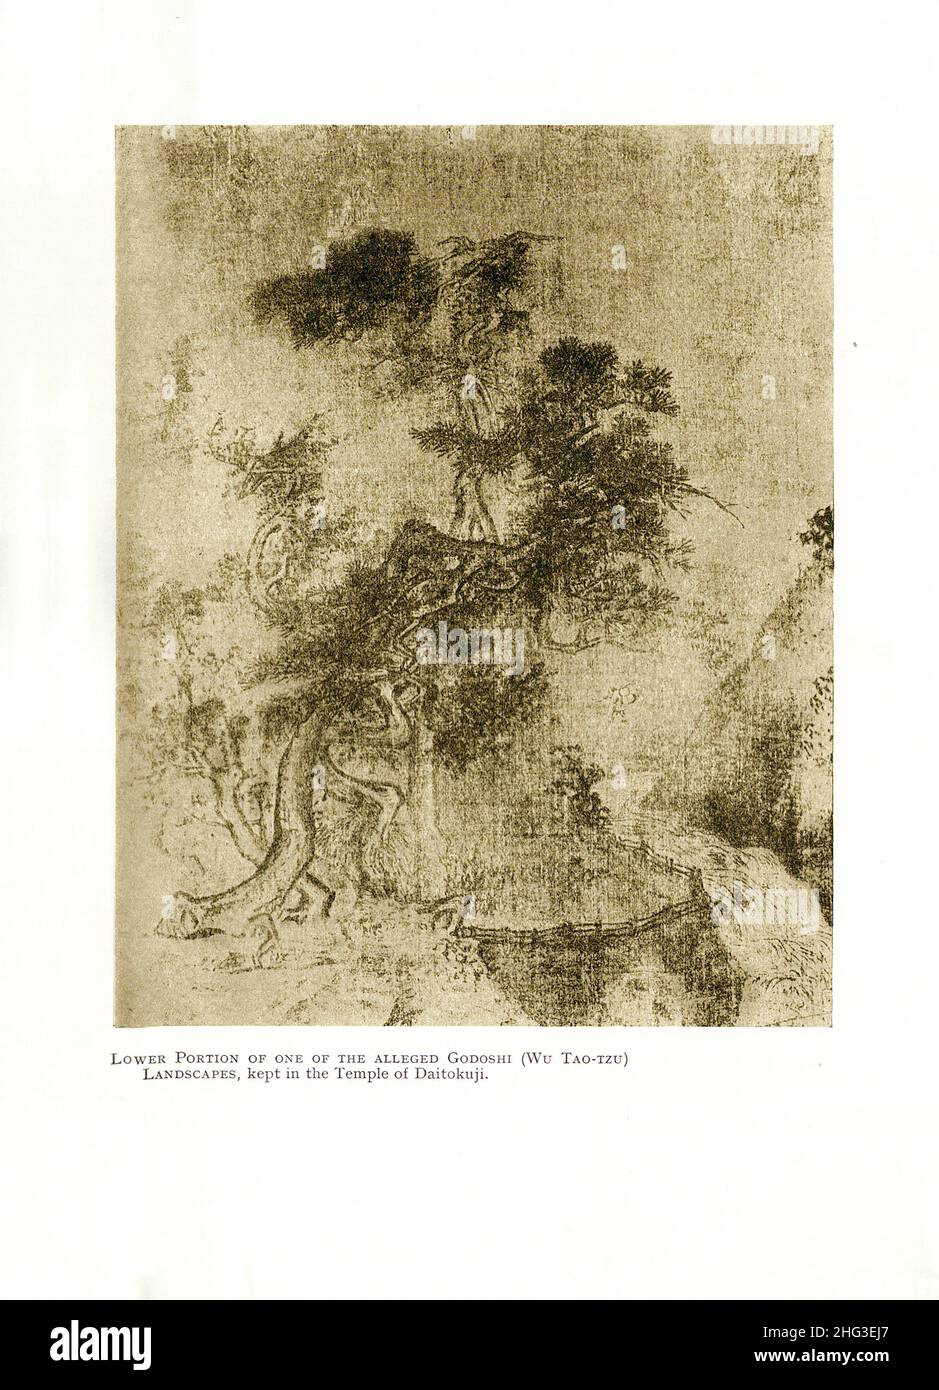 Arte della Cina, canzone del nord. Parte inferiore di uno dei presunti Godoshi (Wu Tao-Tzu). Paesaggi vintage, conservati nel Tempio di Daitoku-ji (tempio di Foto Stock